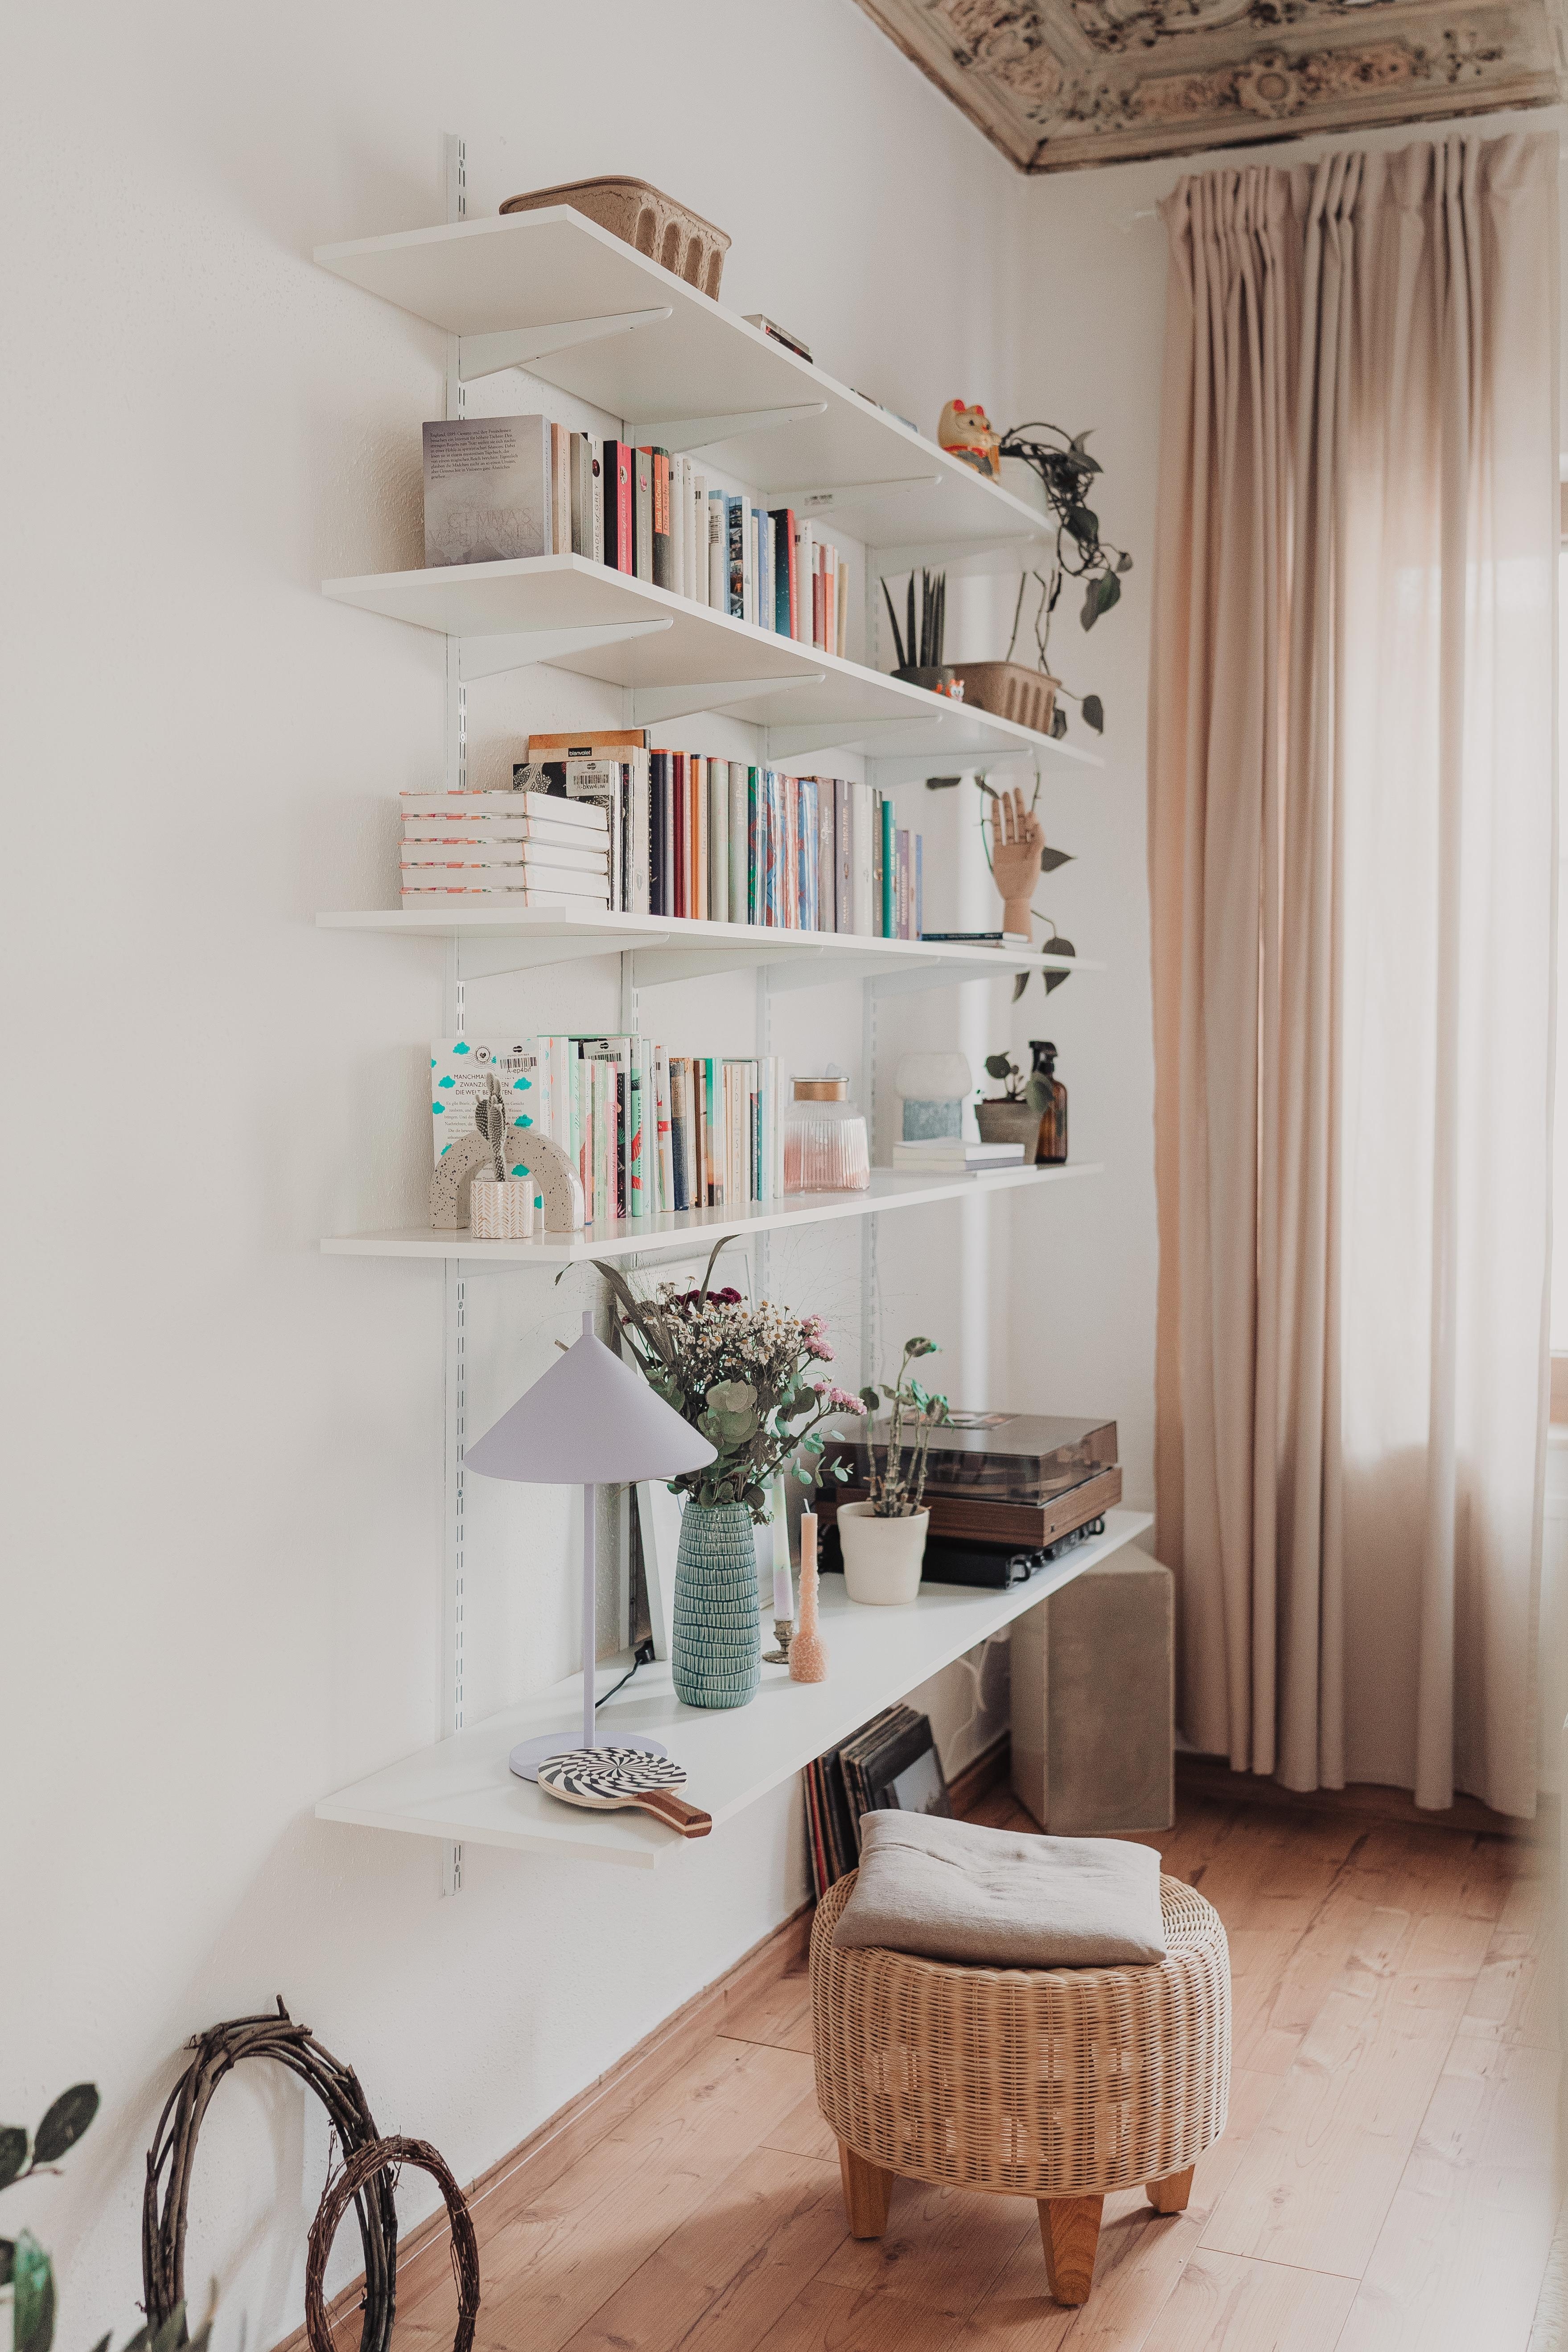 Der Traum vom Bücherregal #booklover #diy #couchstyle